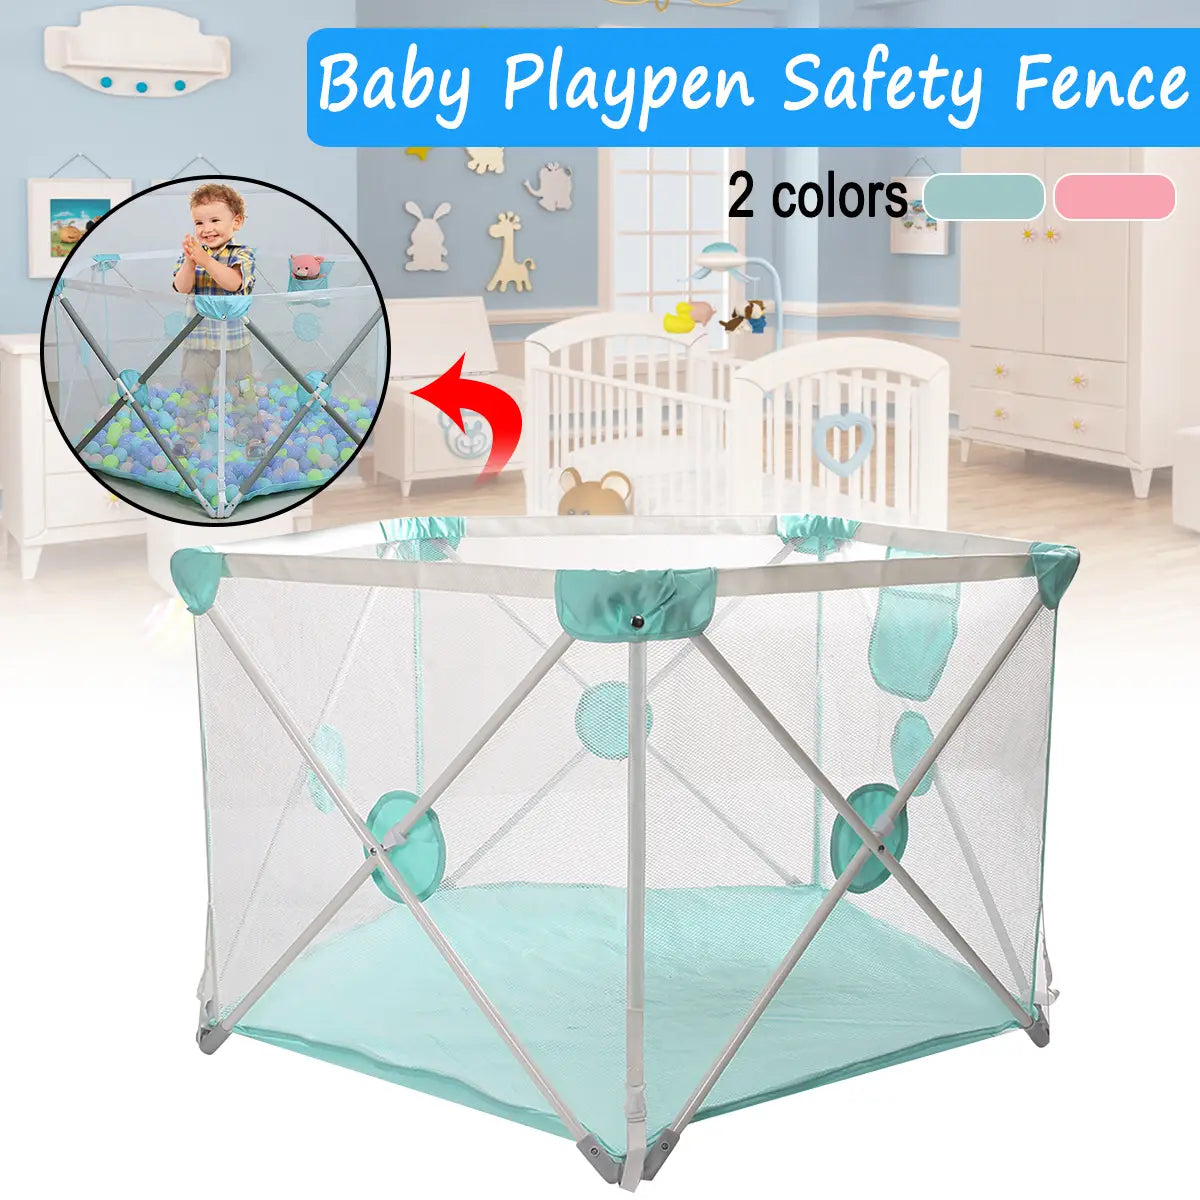 110*72*73 Cm Children Playpen Safety Fence Baby Playpen